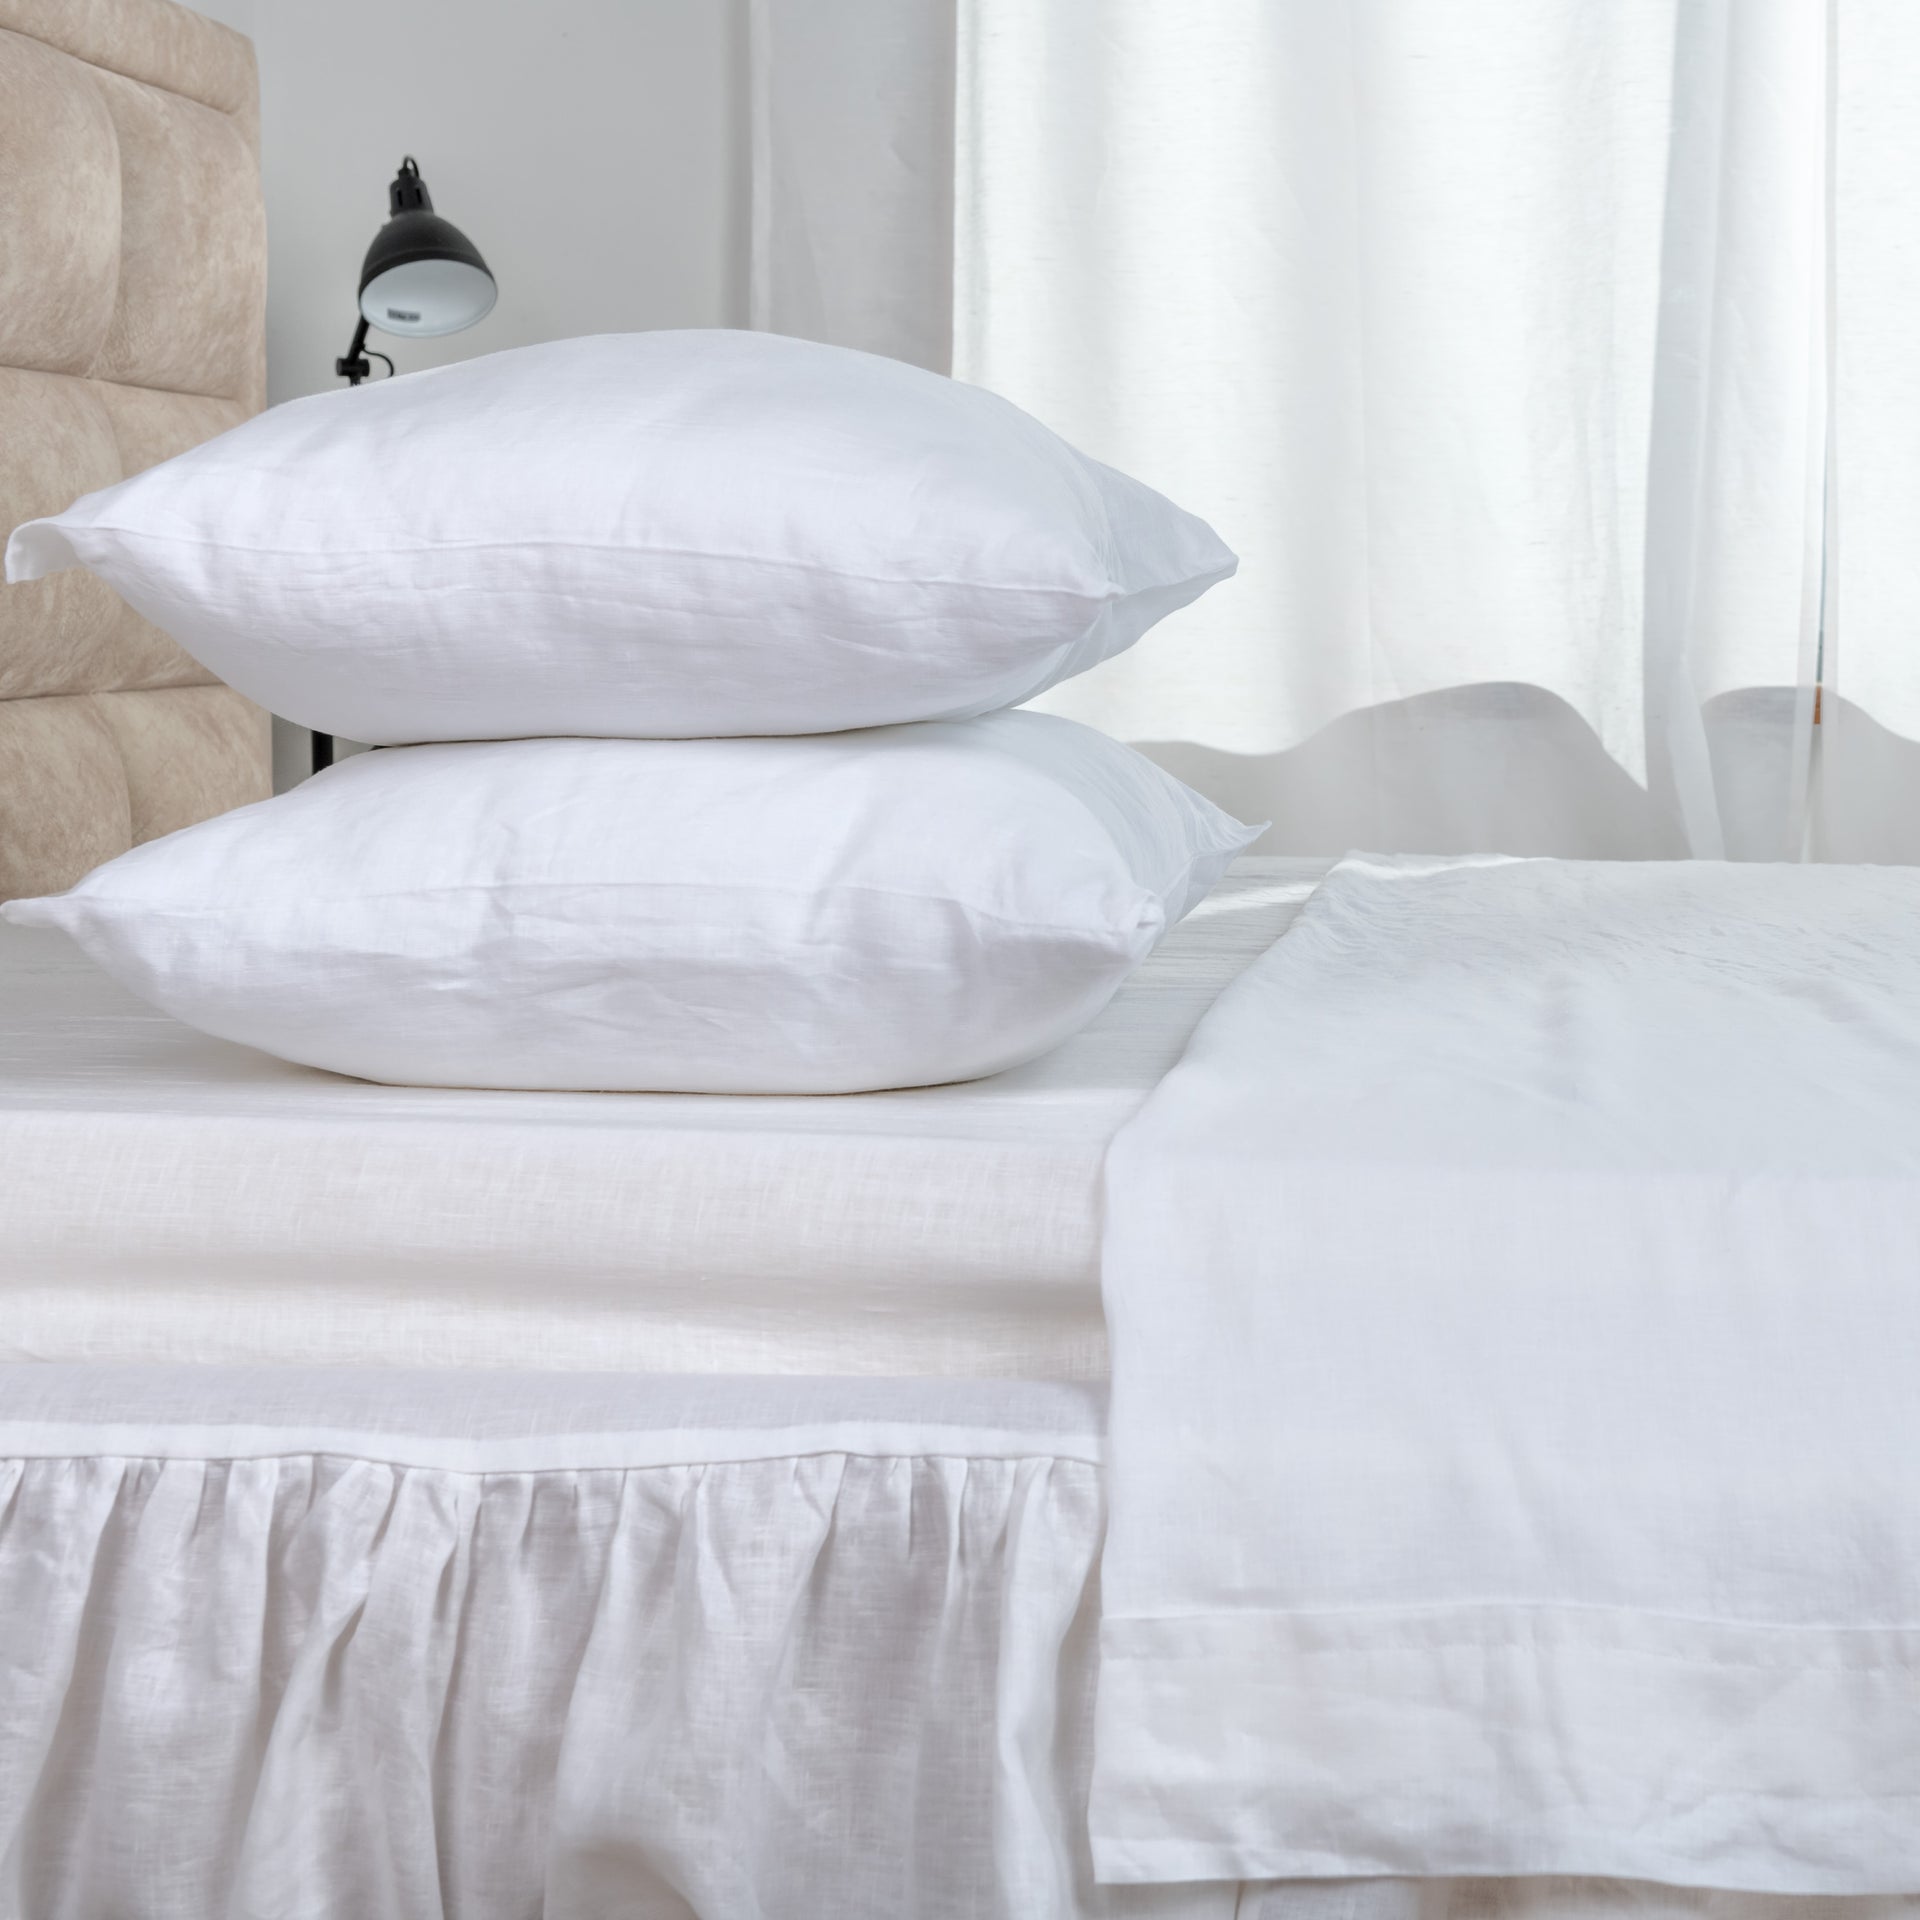 White Linen Bed Sheets - 4 Piece Linen Sheet Set - Twin, Full, Queen